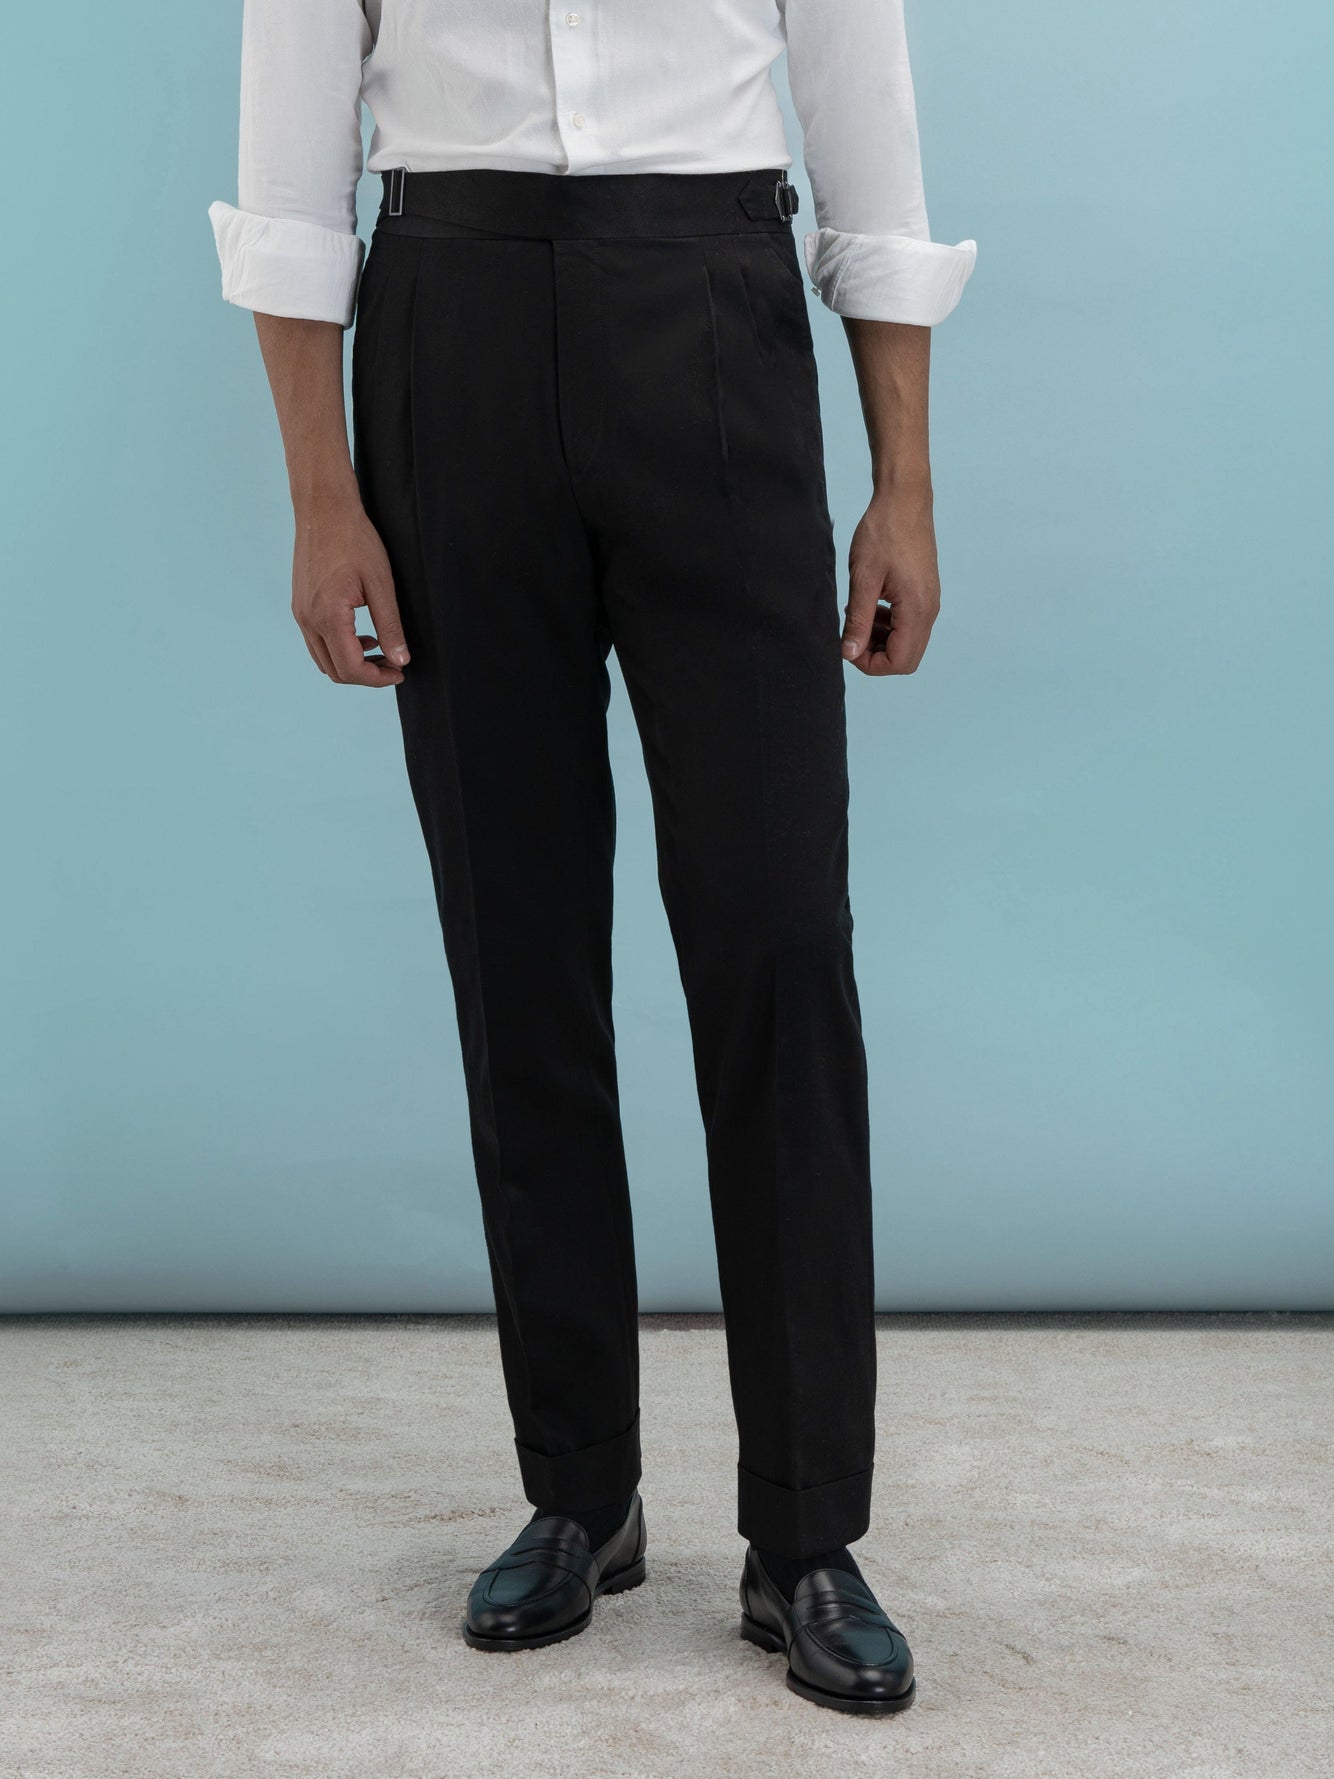 Prom Black Cotton Gurkha Pants Suit Online